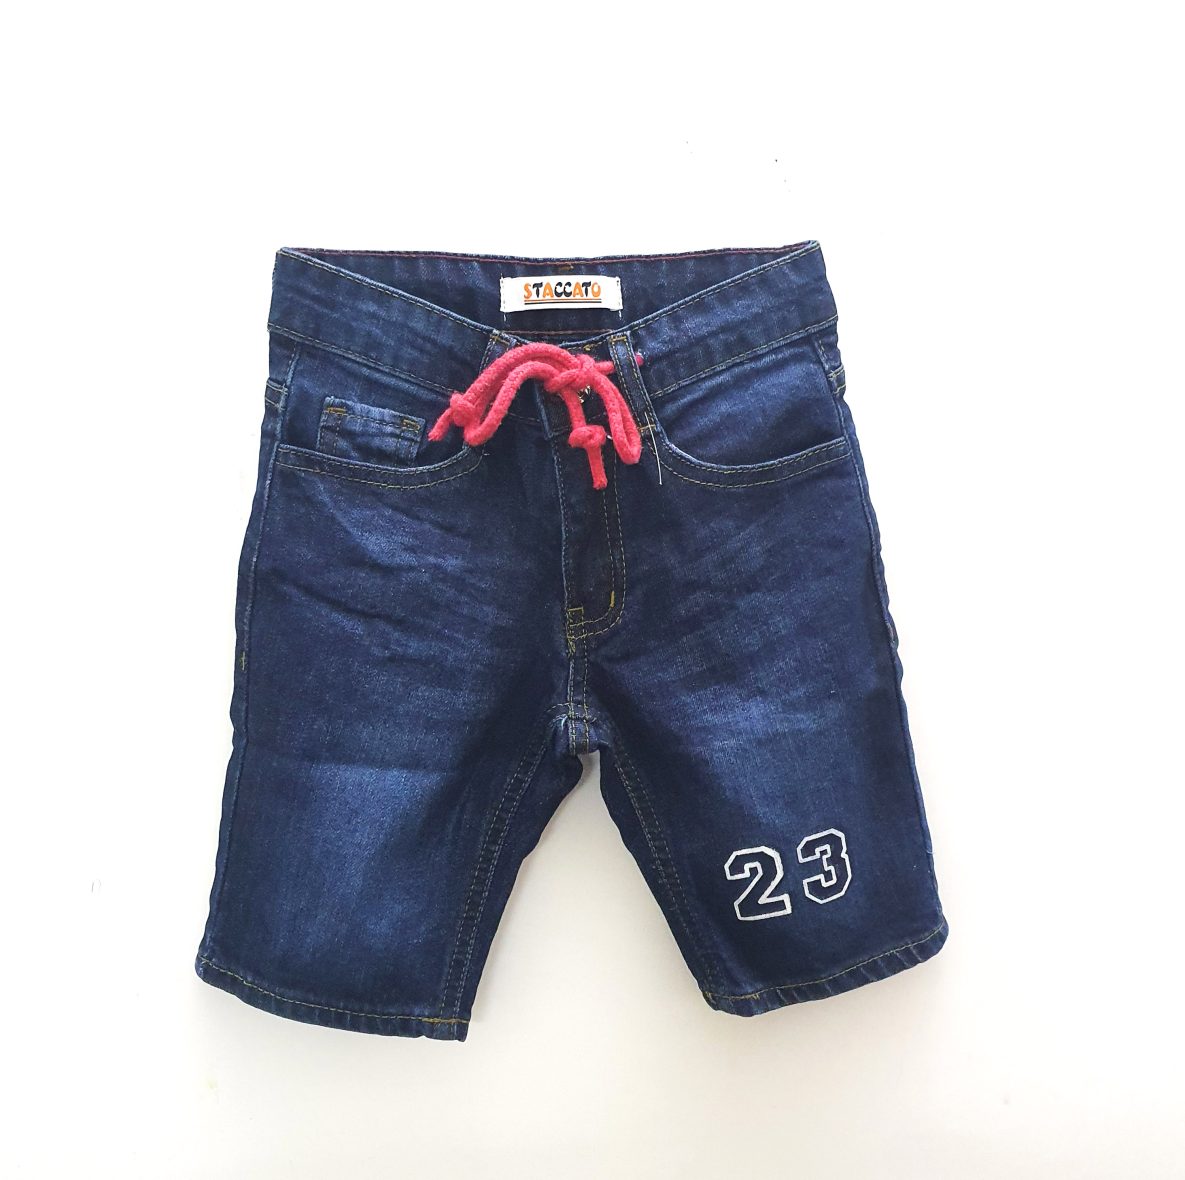 23 Denim Shorts